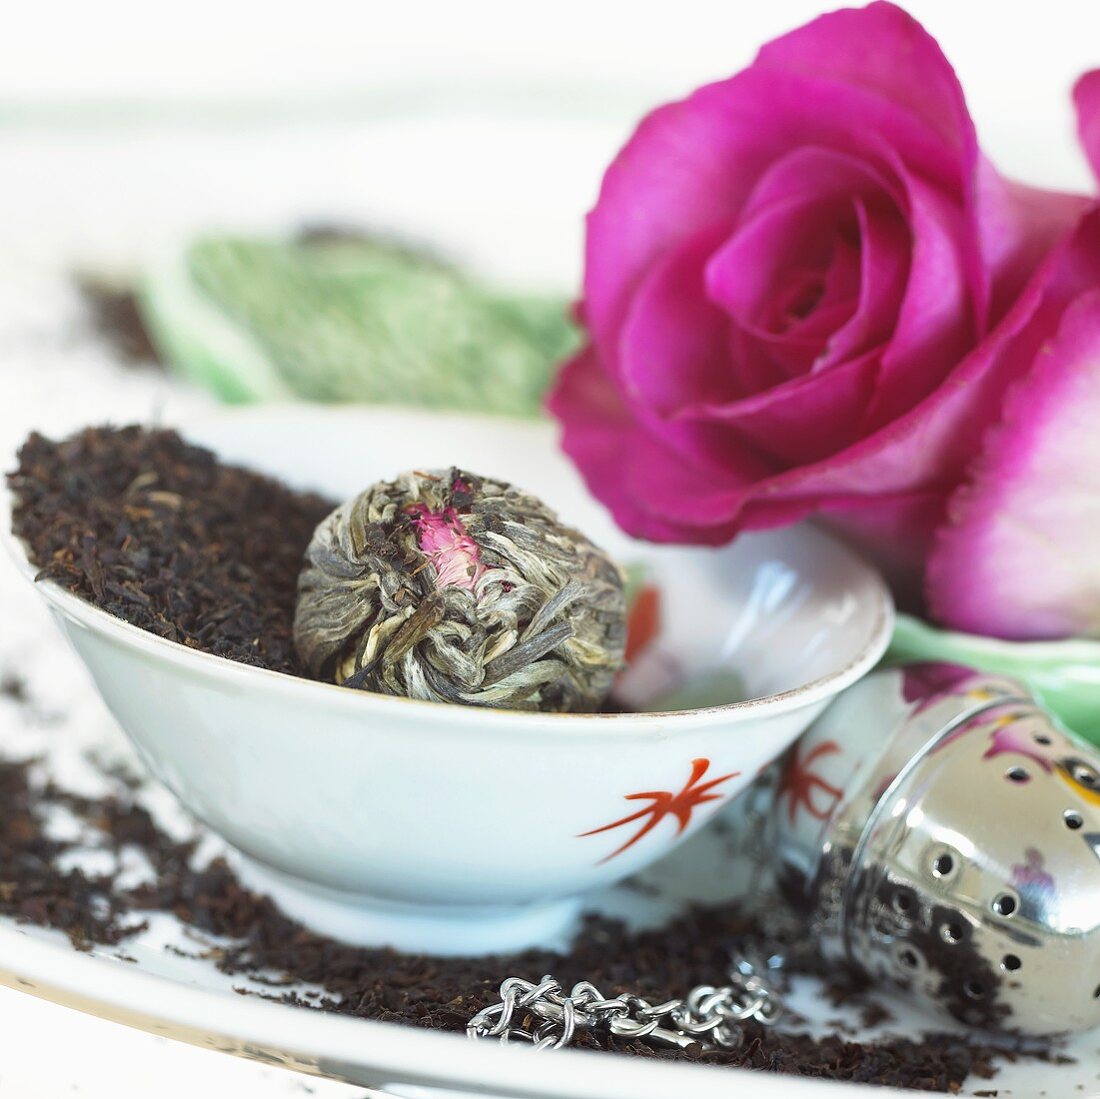 Tea leaves, flowering tea, tea infuser and pink roses